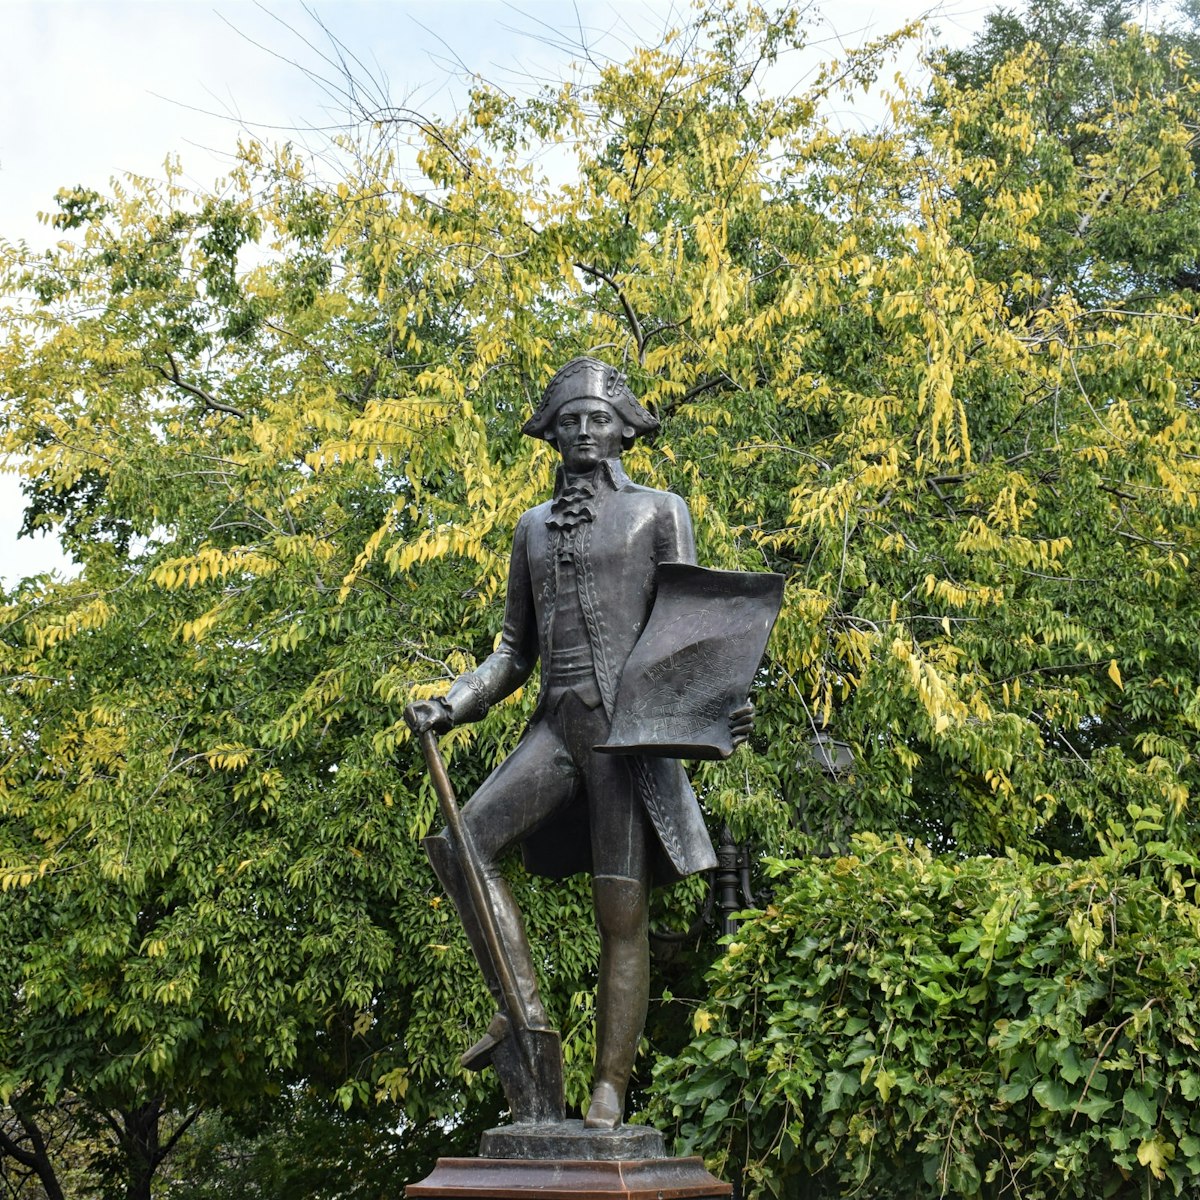 The statue of José de Ribas, who built Odesa's harbour